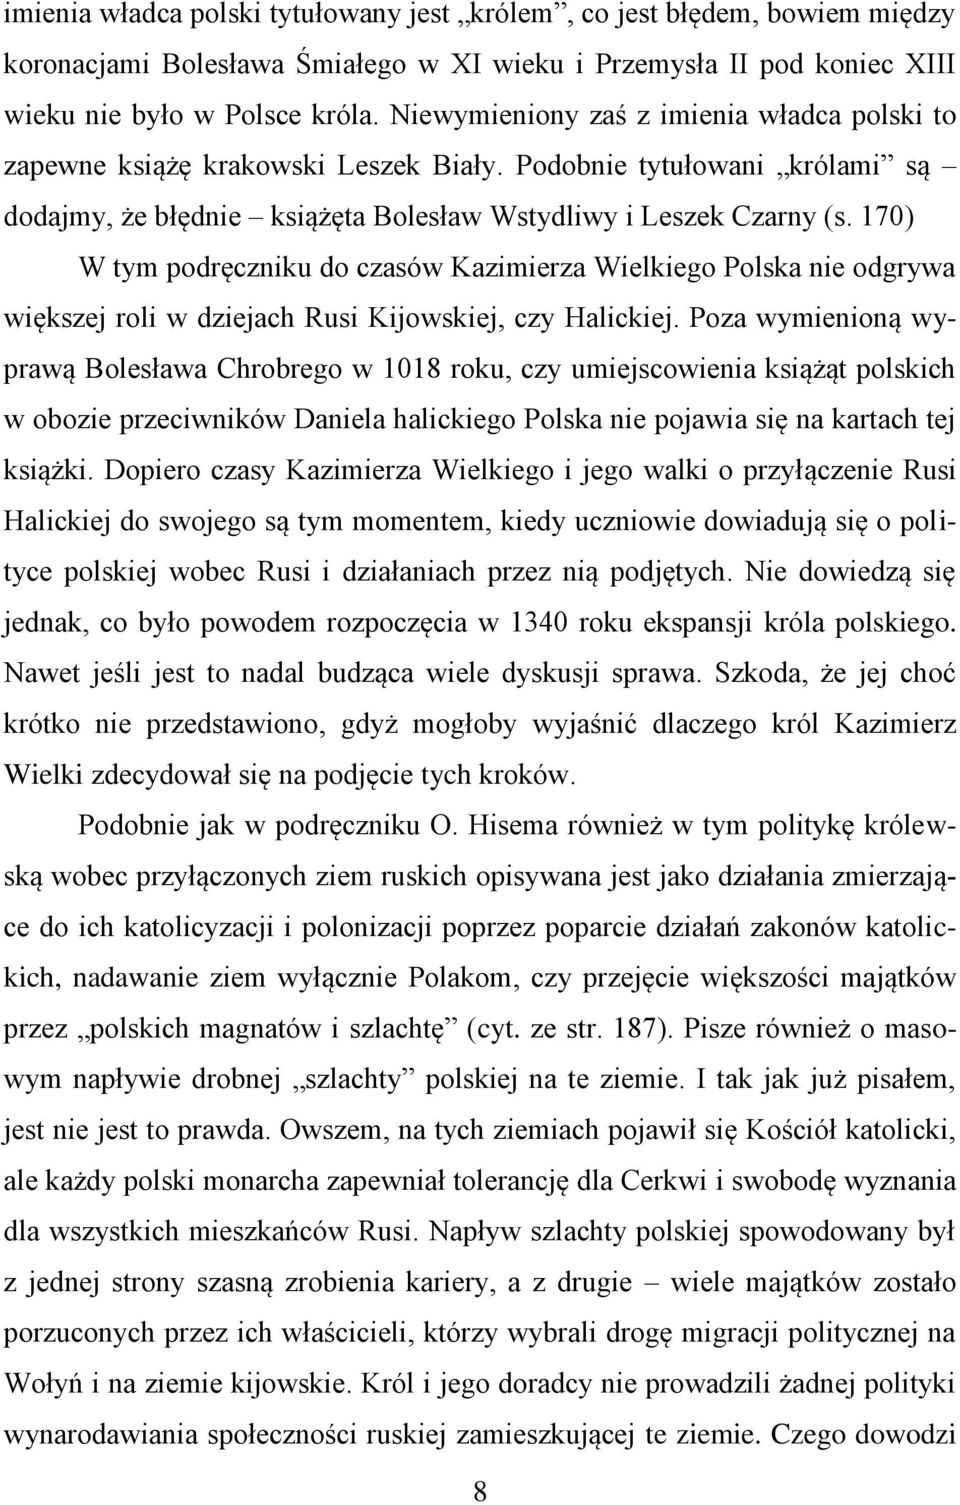 170) W tym podręczniku do czasów Kazimierza Wielkiego Polska nie odgrywa większej roli w dziejach Rusi Kijowskiej, czy Halickiej.